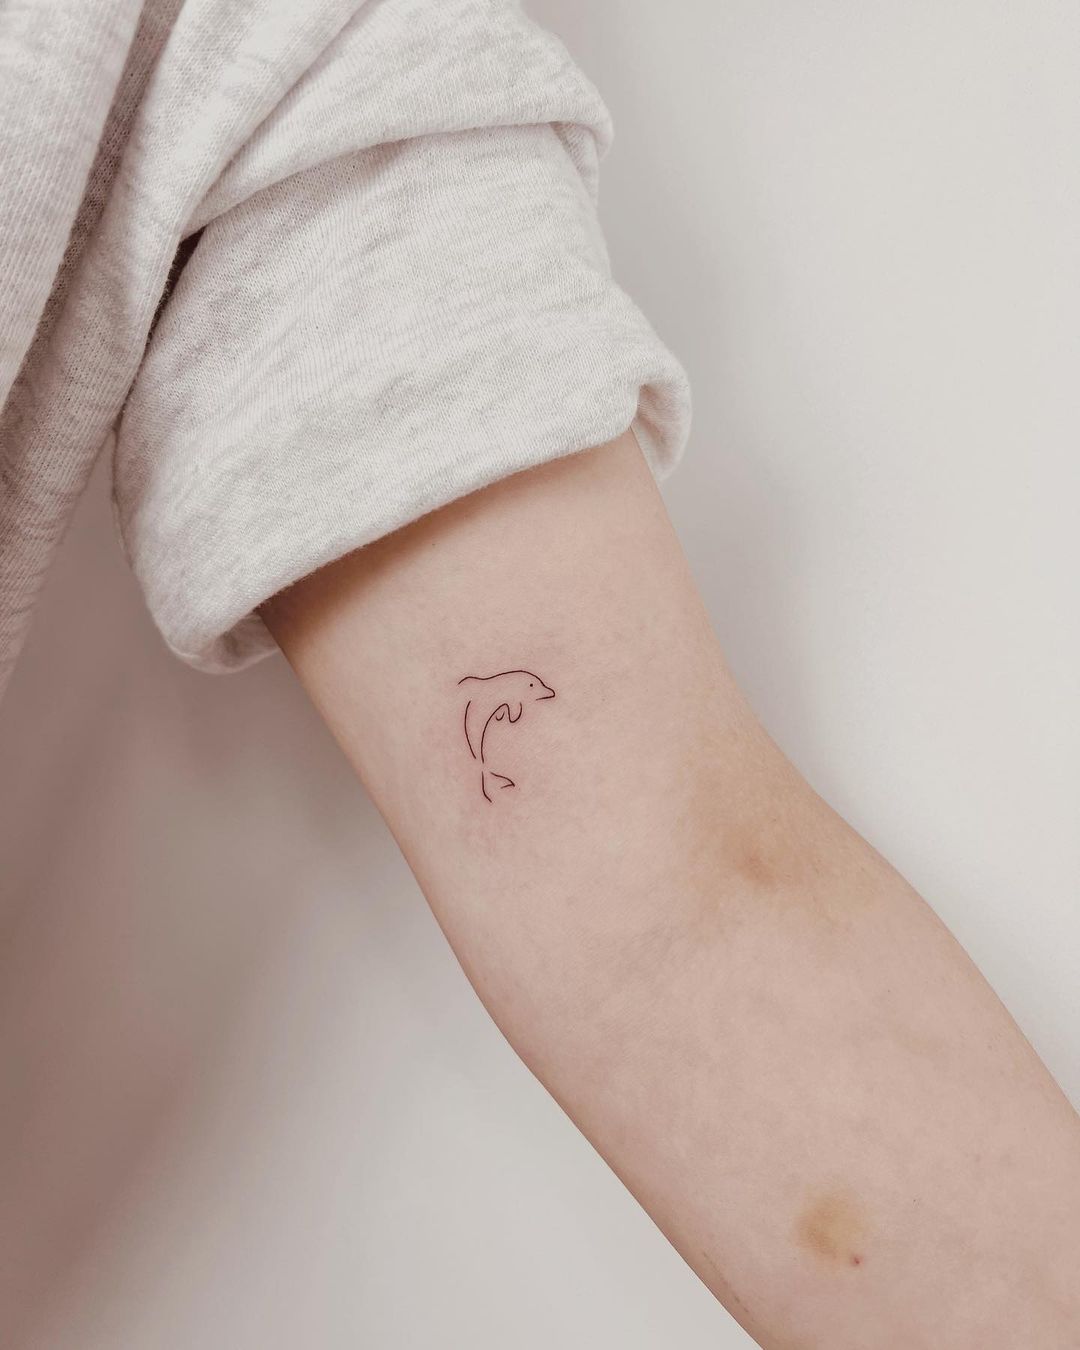 Fineline dolphin tattoo by tattooist dante